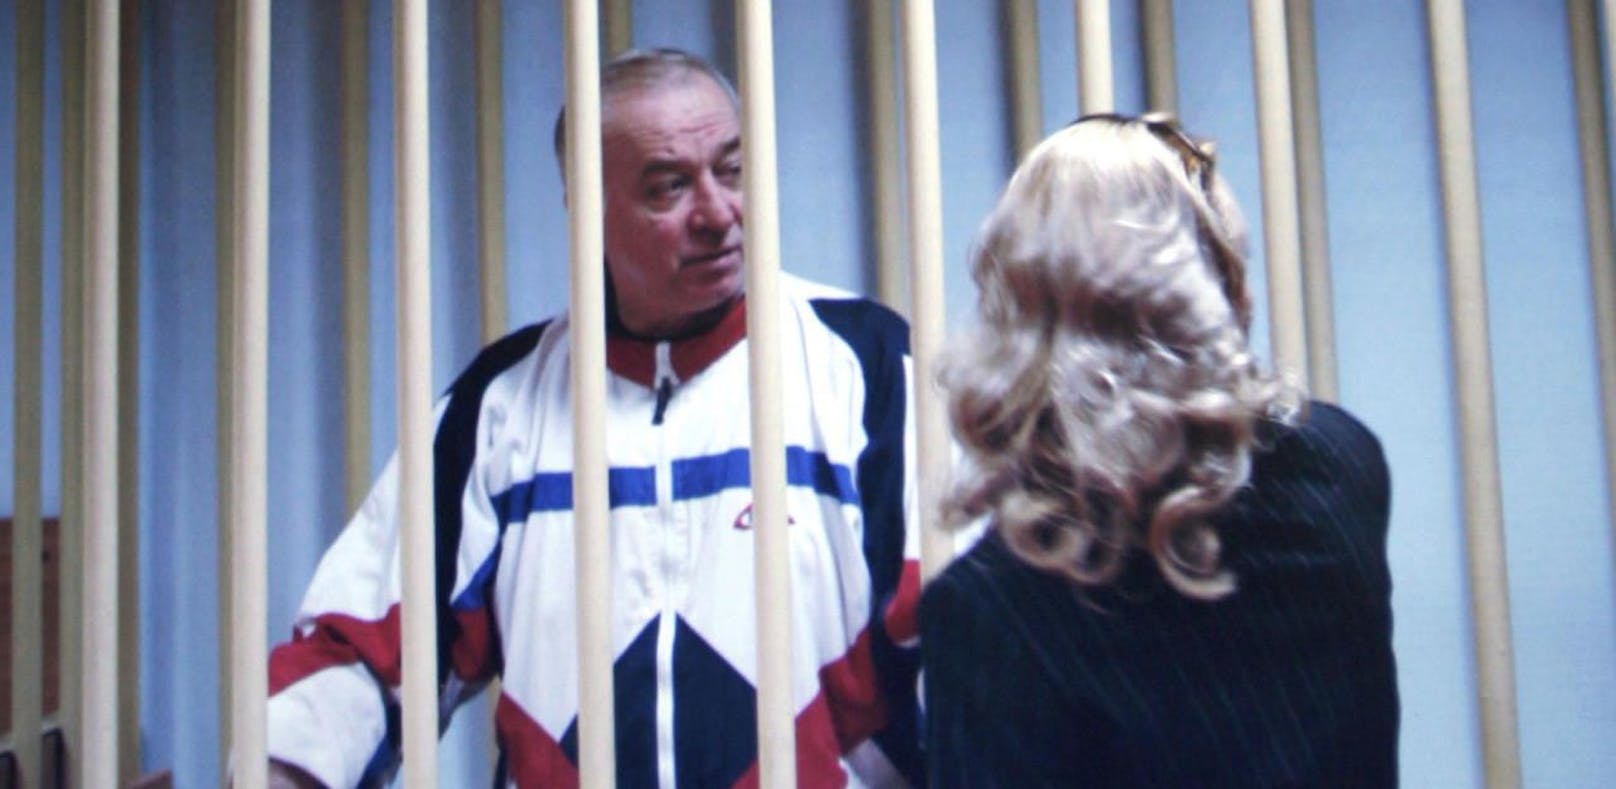 Der 66-jährige Ex-Spion Sergei Skripal verkaufte russische Geheimdienstinformationen an Großbritannien. Nun ringt er mit dem Tod.